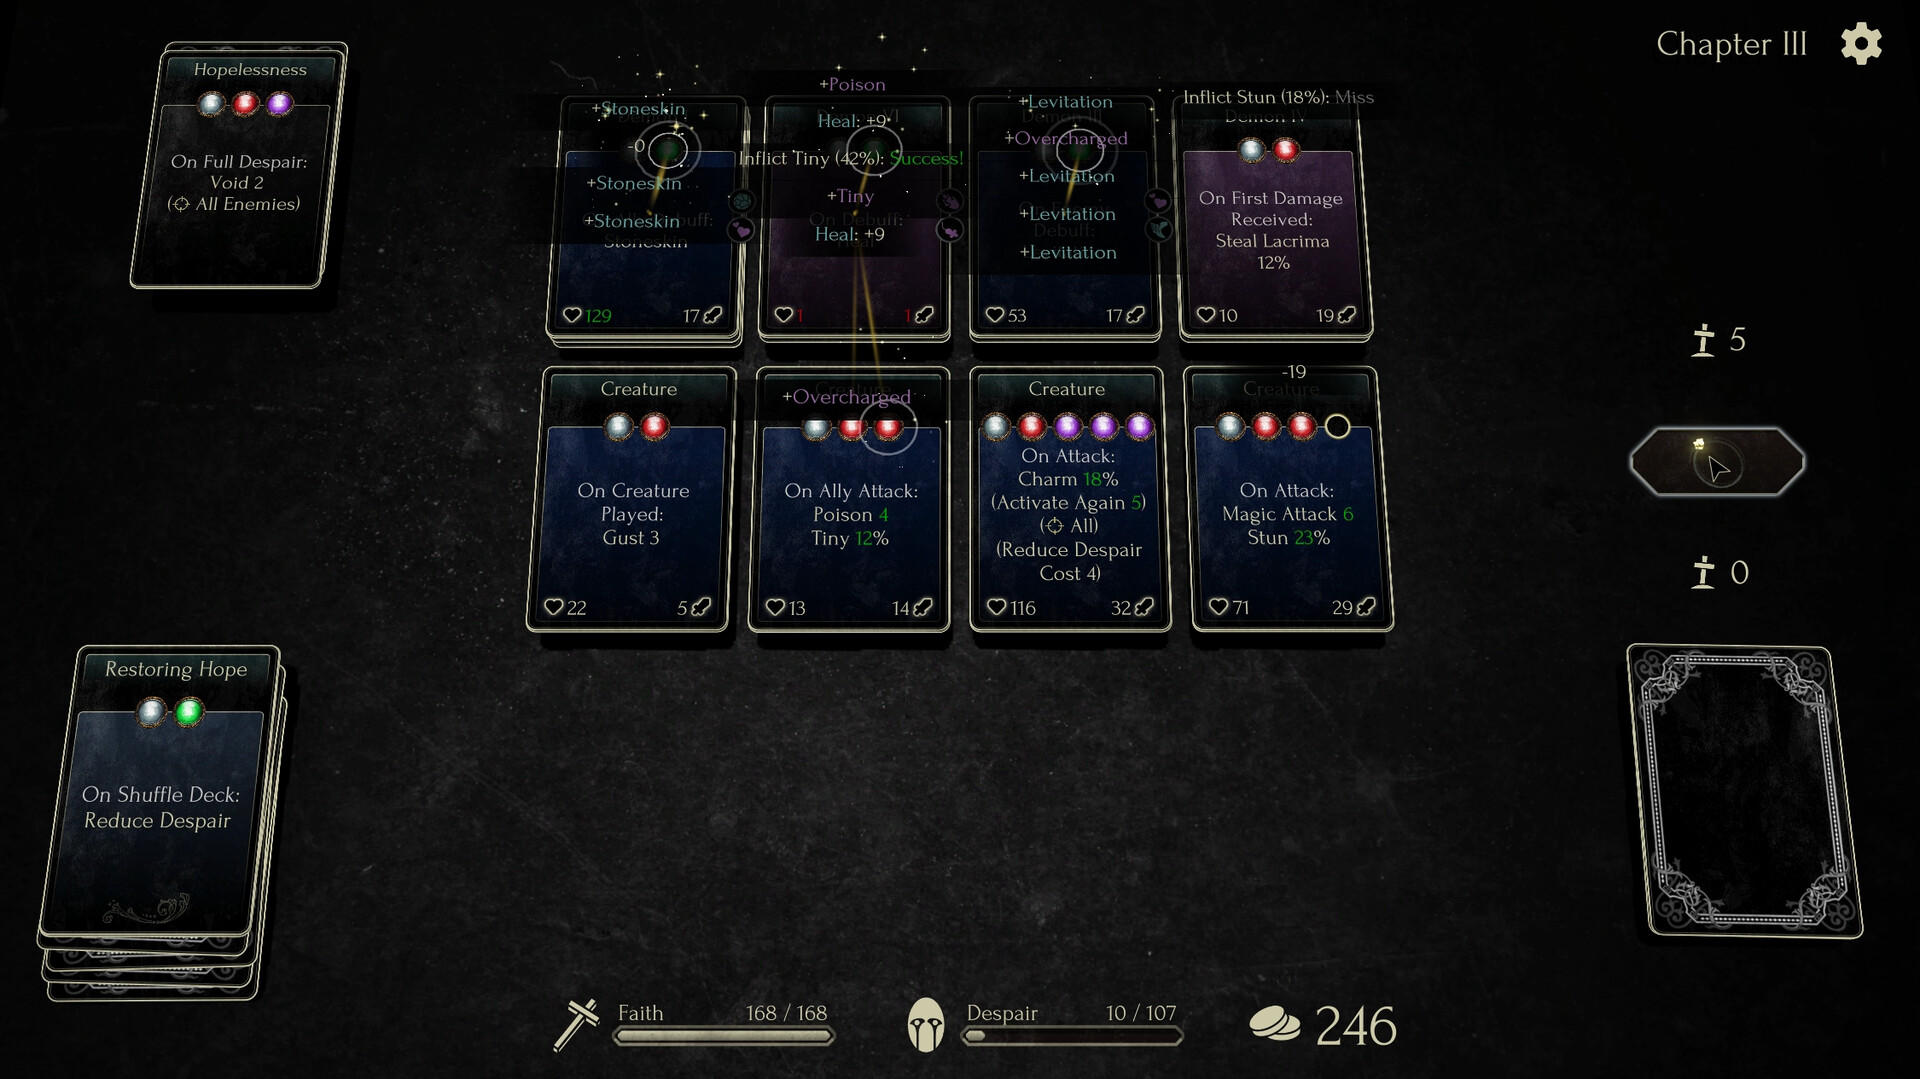 Faith in Despair screenshot game